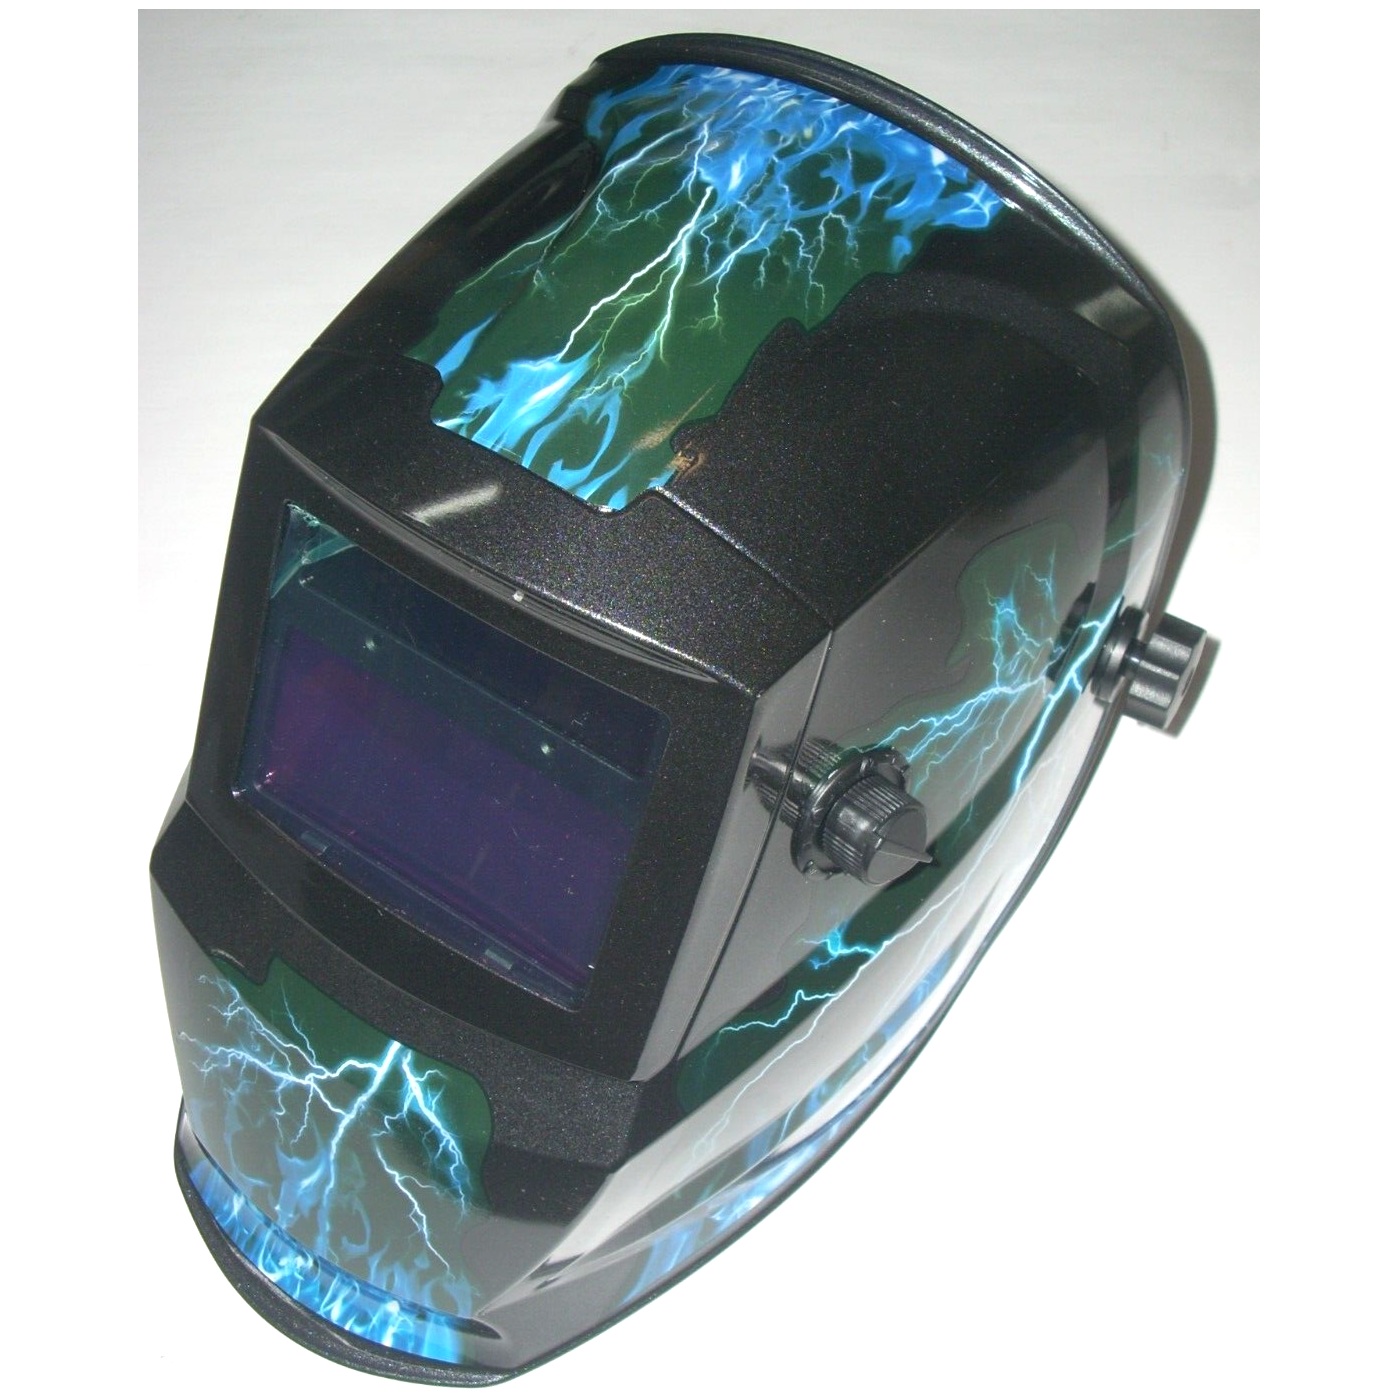 Blue Lightning Welding Helmet Auto Darkening Adj Shade 9-13 Solar w 2 Extra Lens